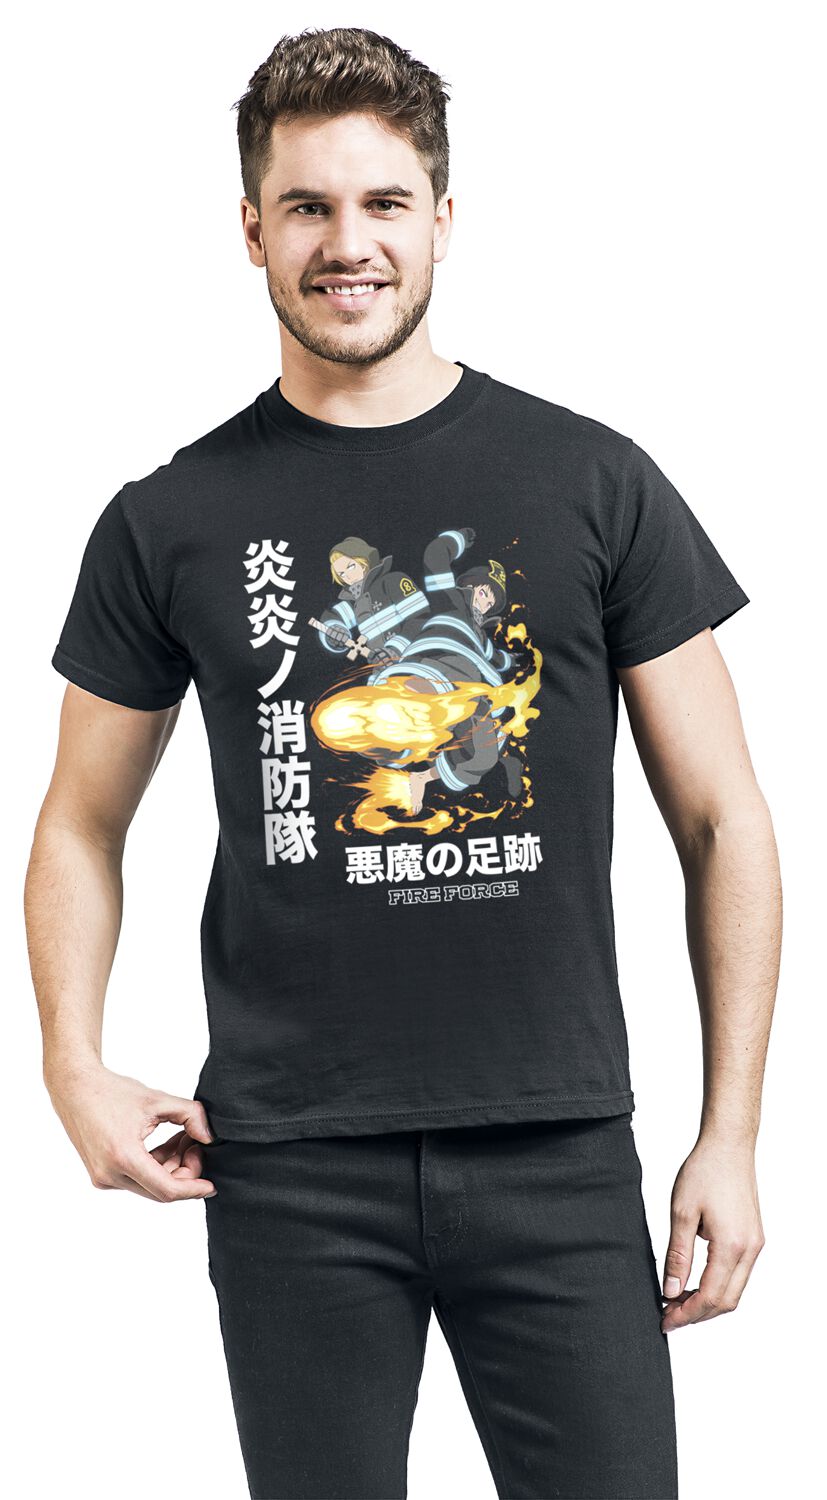 Fire Force - Anime T-Shirt - Devil Footprints - S bis XL - für Männer - Größe XL - schwarz  - Lizenzierter Fanartikel